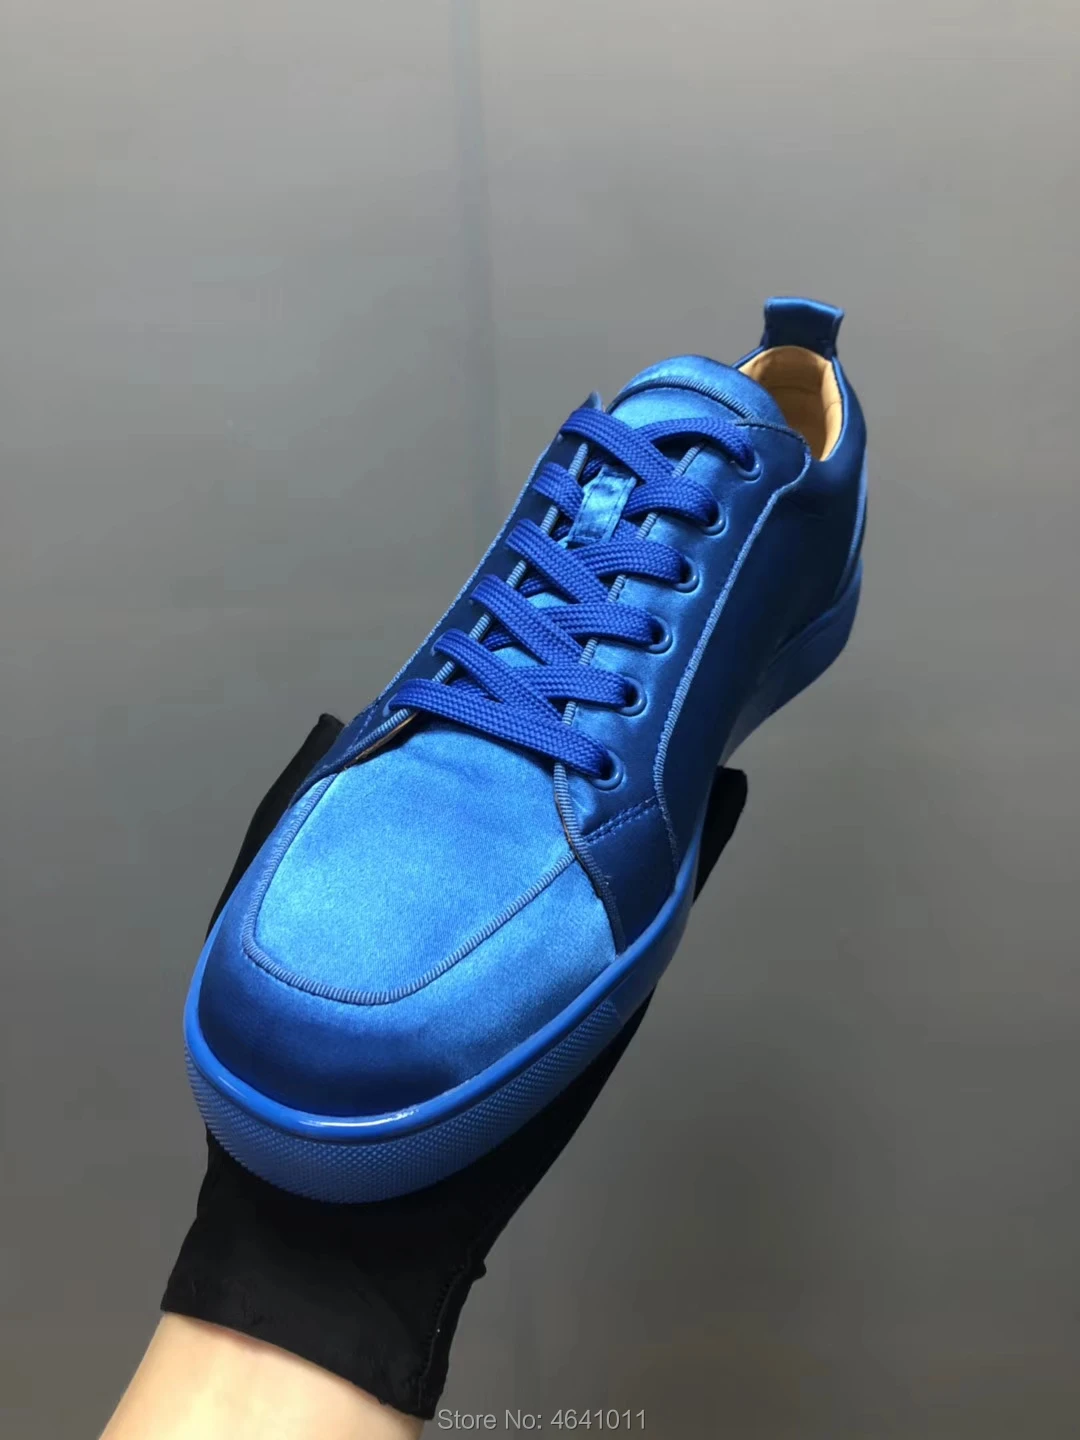 Cl andgz/трендовая Мужская обувь из лакированной кожи с красной подошвой и низким вырезом повседневная обувь с заклепками синего цвета Пара моделей лоферы на плоской подошве